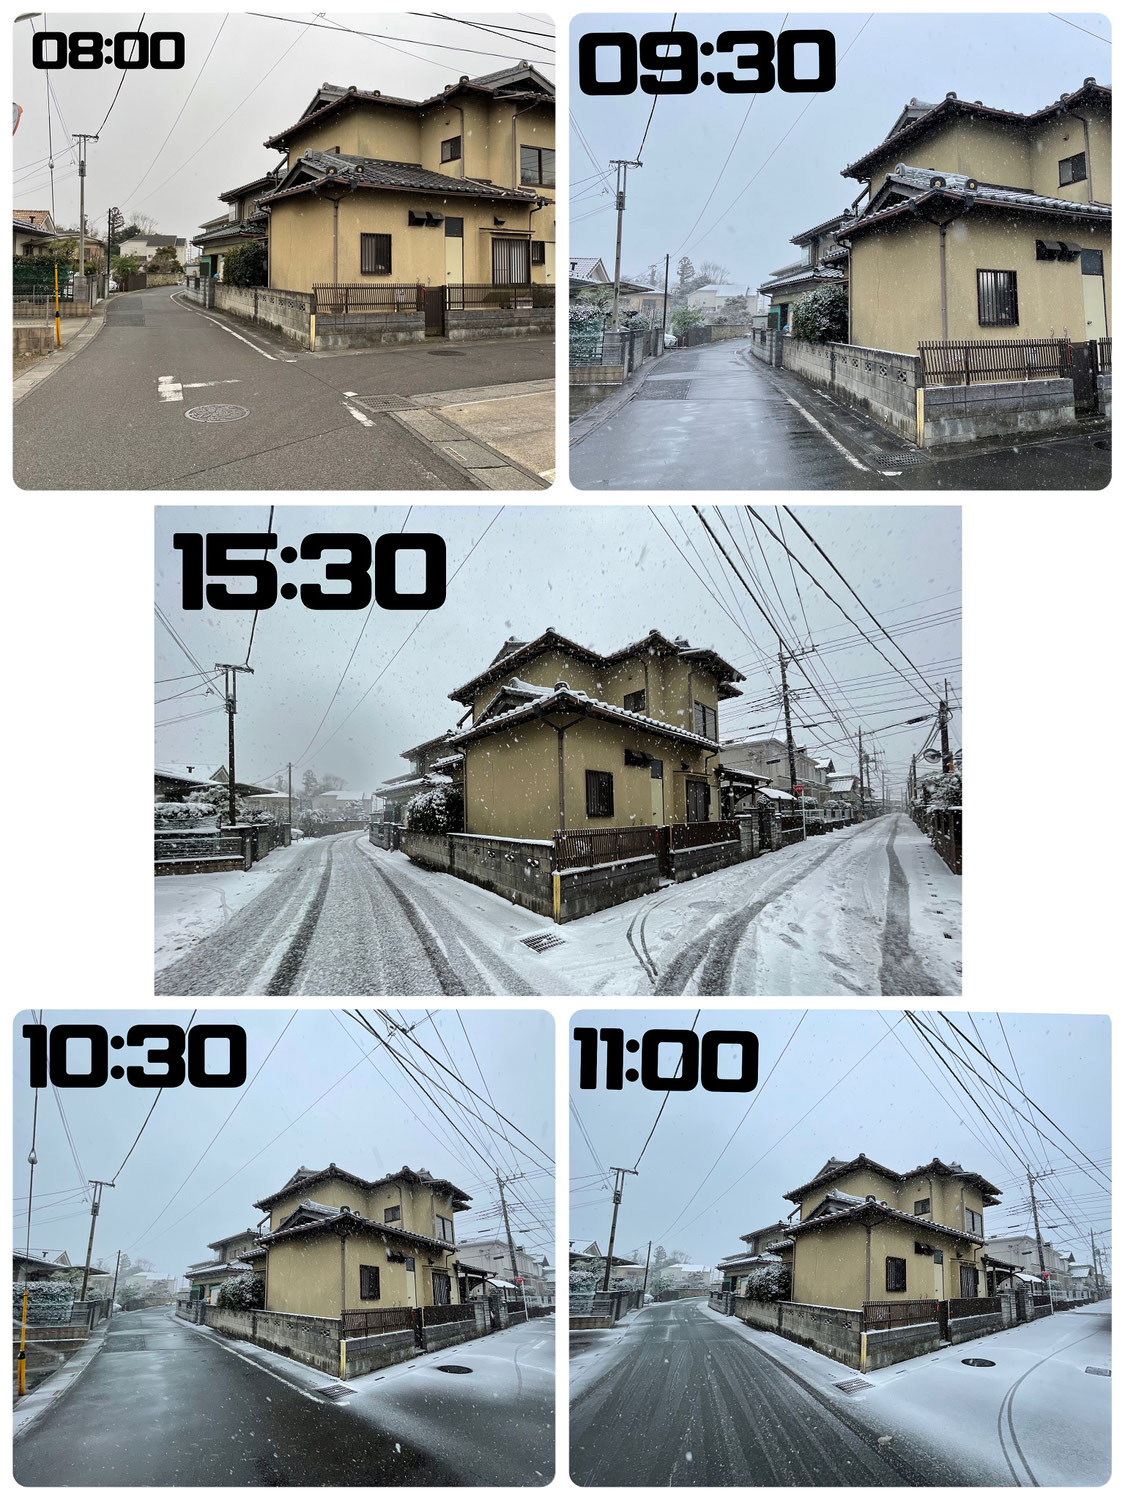 埼玉でも積雪